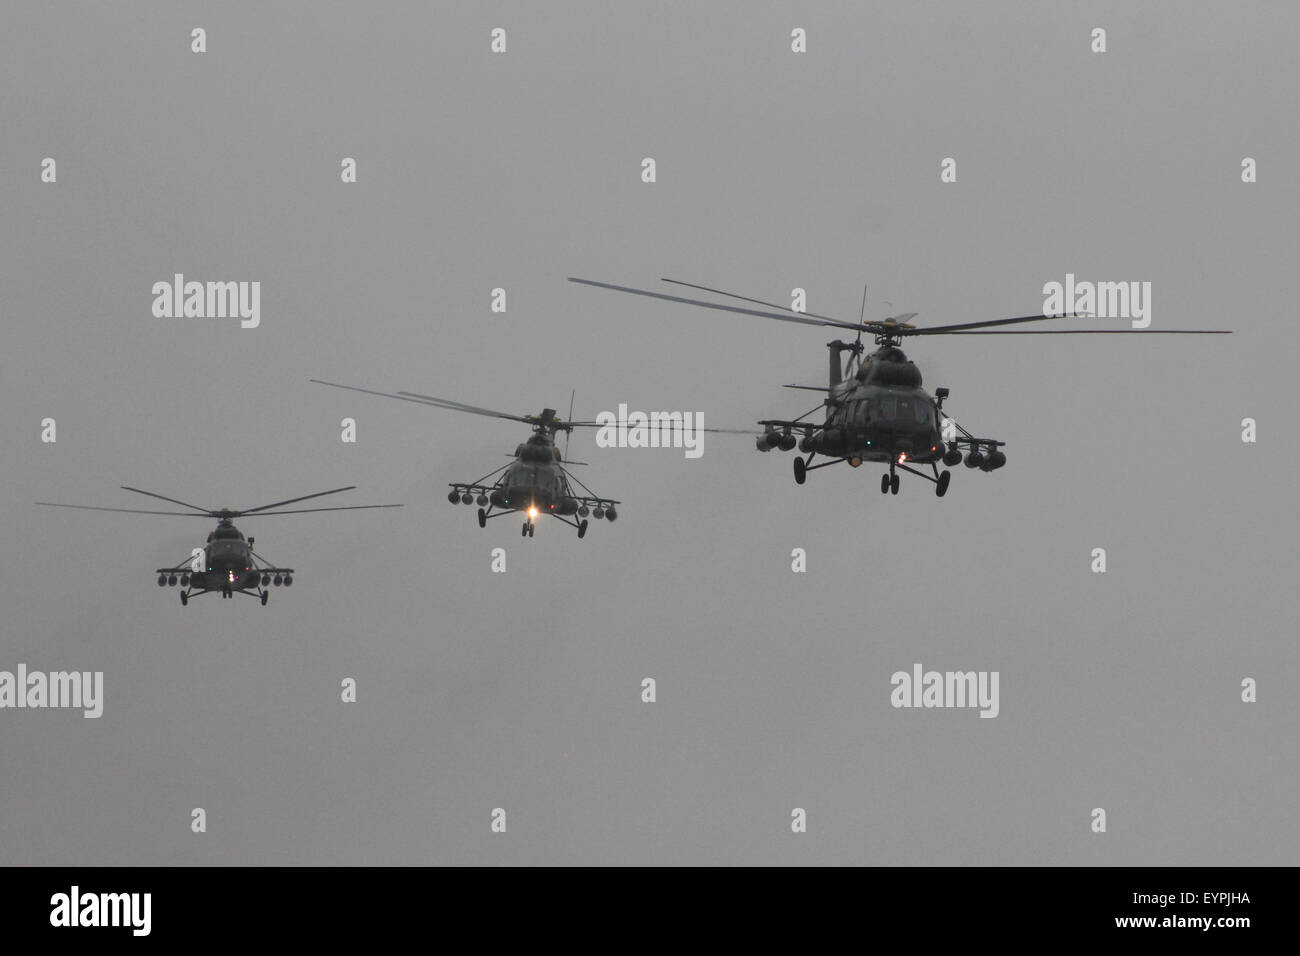 Lima, Perú. 2 ago, 2015. Helicópteros del Ejército Peruano participar en un desfile naval y aéreo para conmemorar el 194ª aniversario de la independencia de ese país en Lima, capital de Perú, el 2 de agosto de 2015. Crédito: Lius Camacho/Xinhua/Alamy Live News Foto de stock